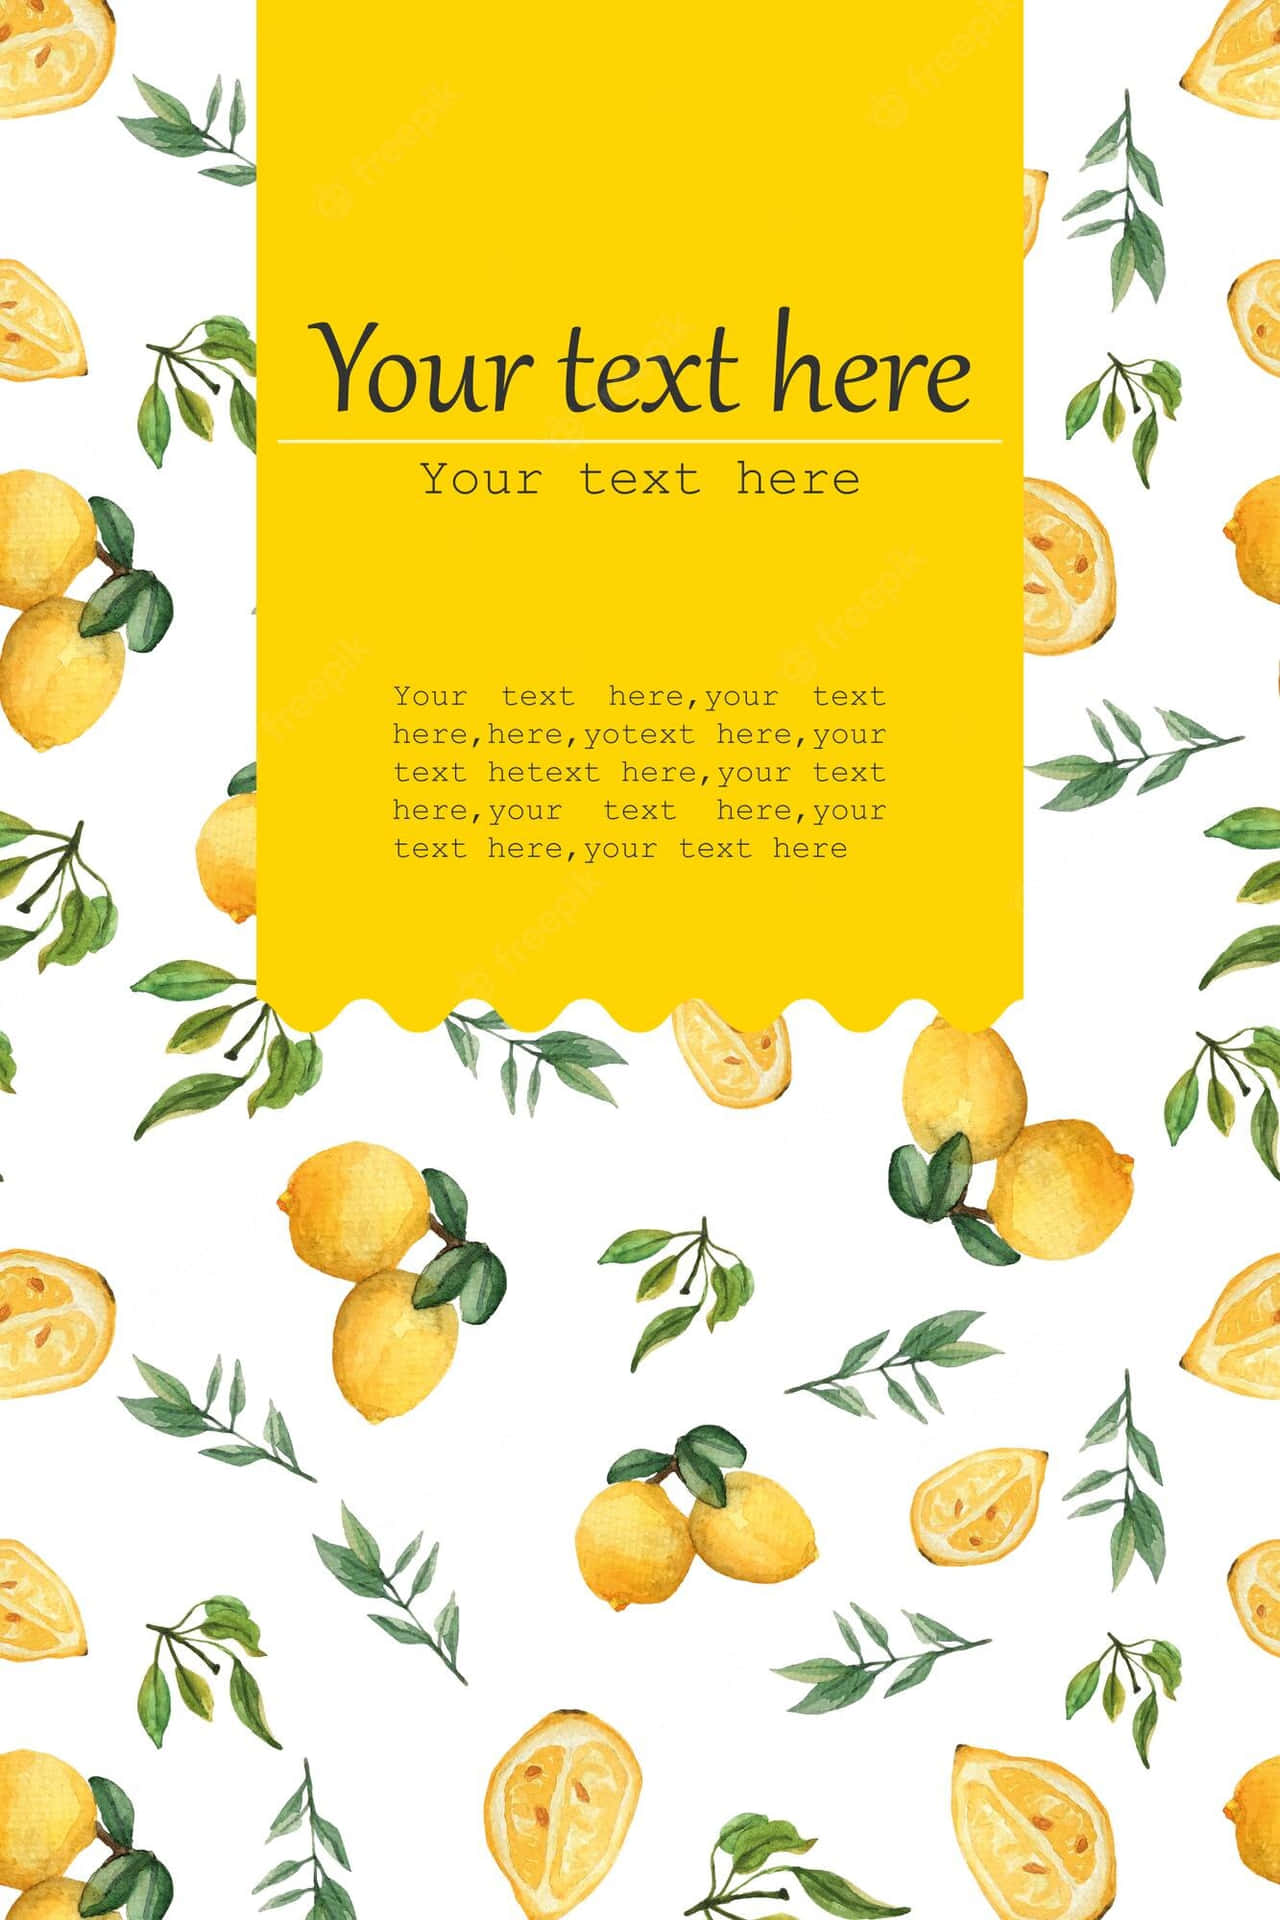 Lienzomóvil De Limón Y Hojas. Iphone Fondo de pantalla